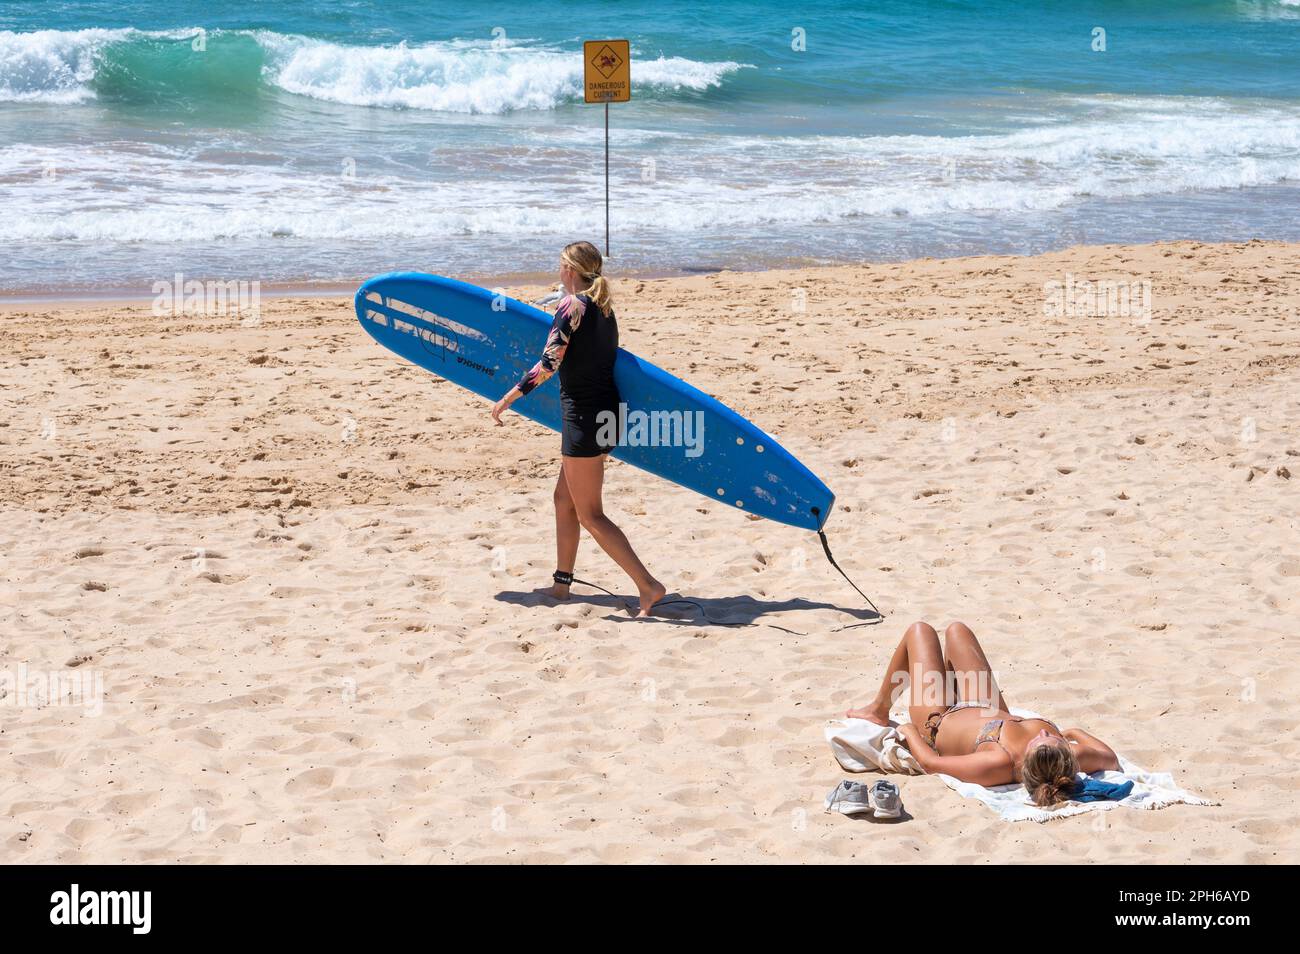 Mentre un sole bagna i raggi, un surfista porta la sua tavola lungo la spiaggia di Manly, Sydney, New South Wales, Australia, sullo sfondo del b Foto Stock